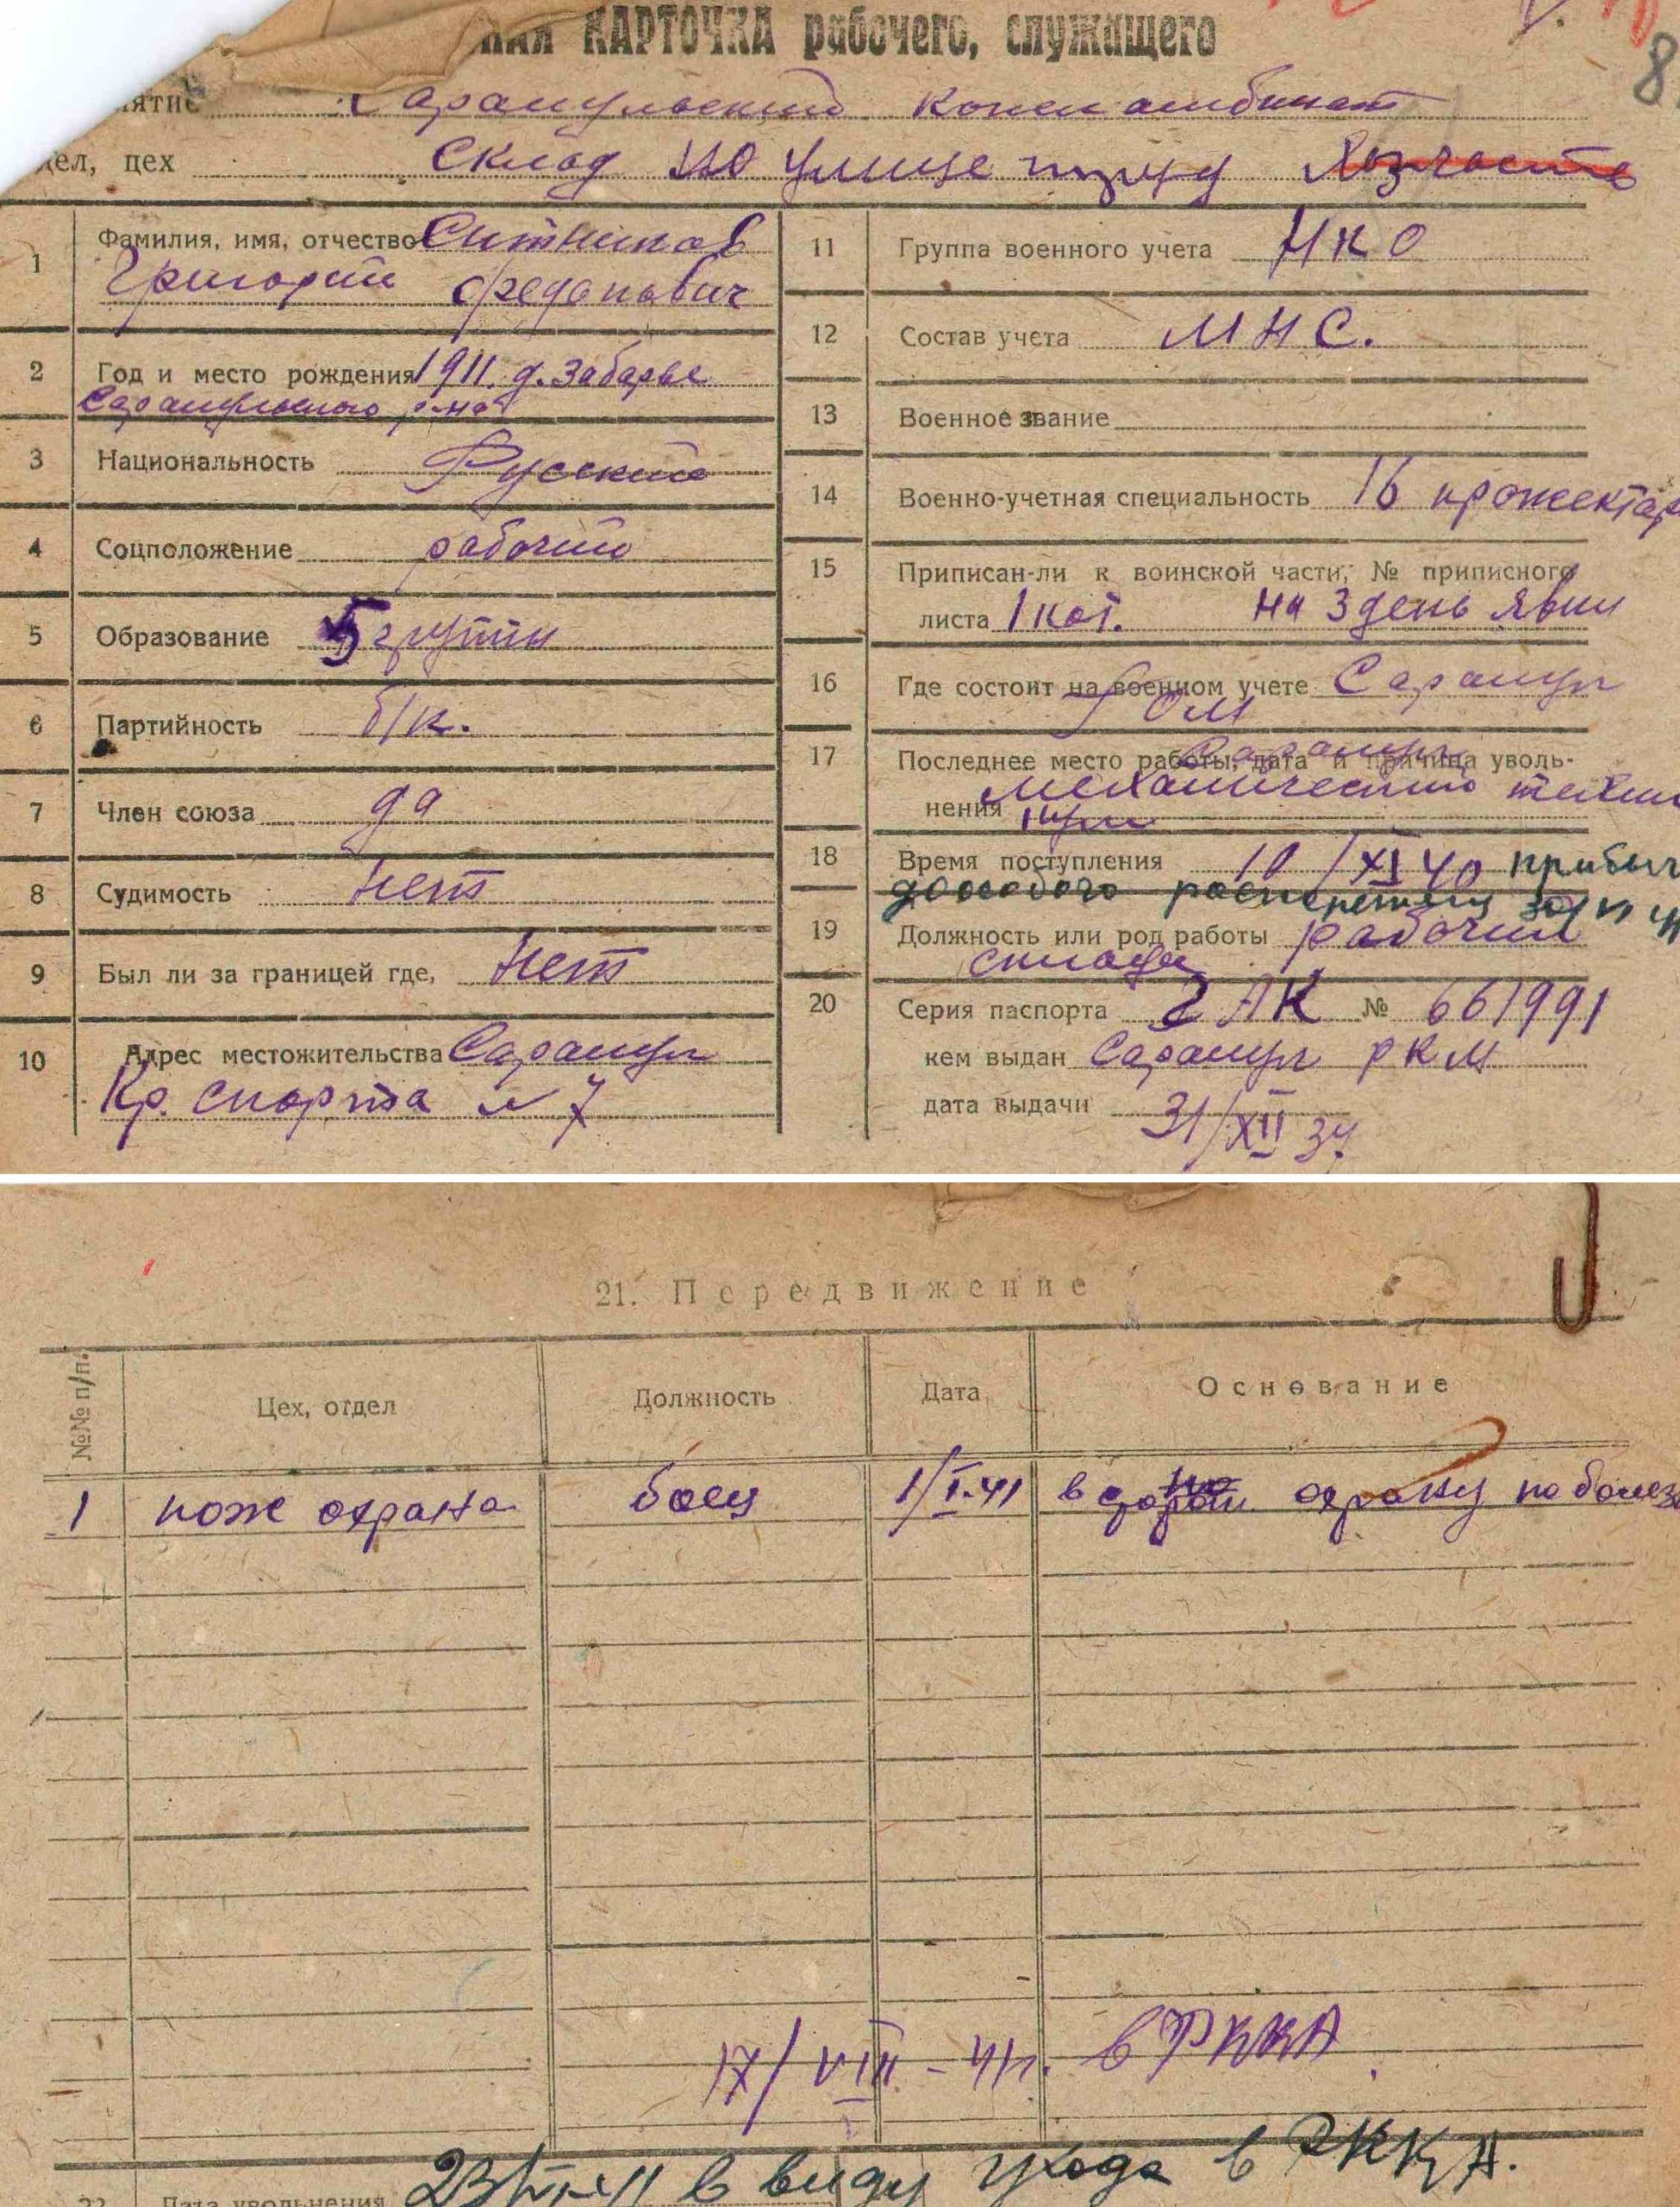  Учетная карточка Сарапульского кожкомбината. Фонды УПДААС